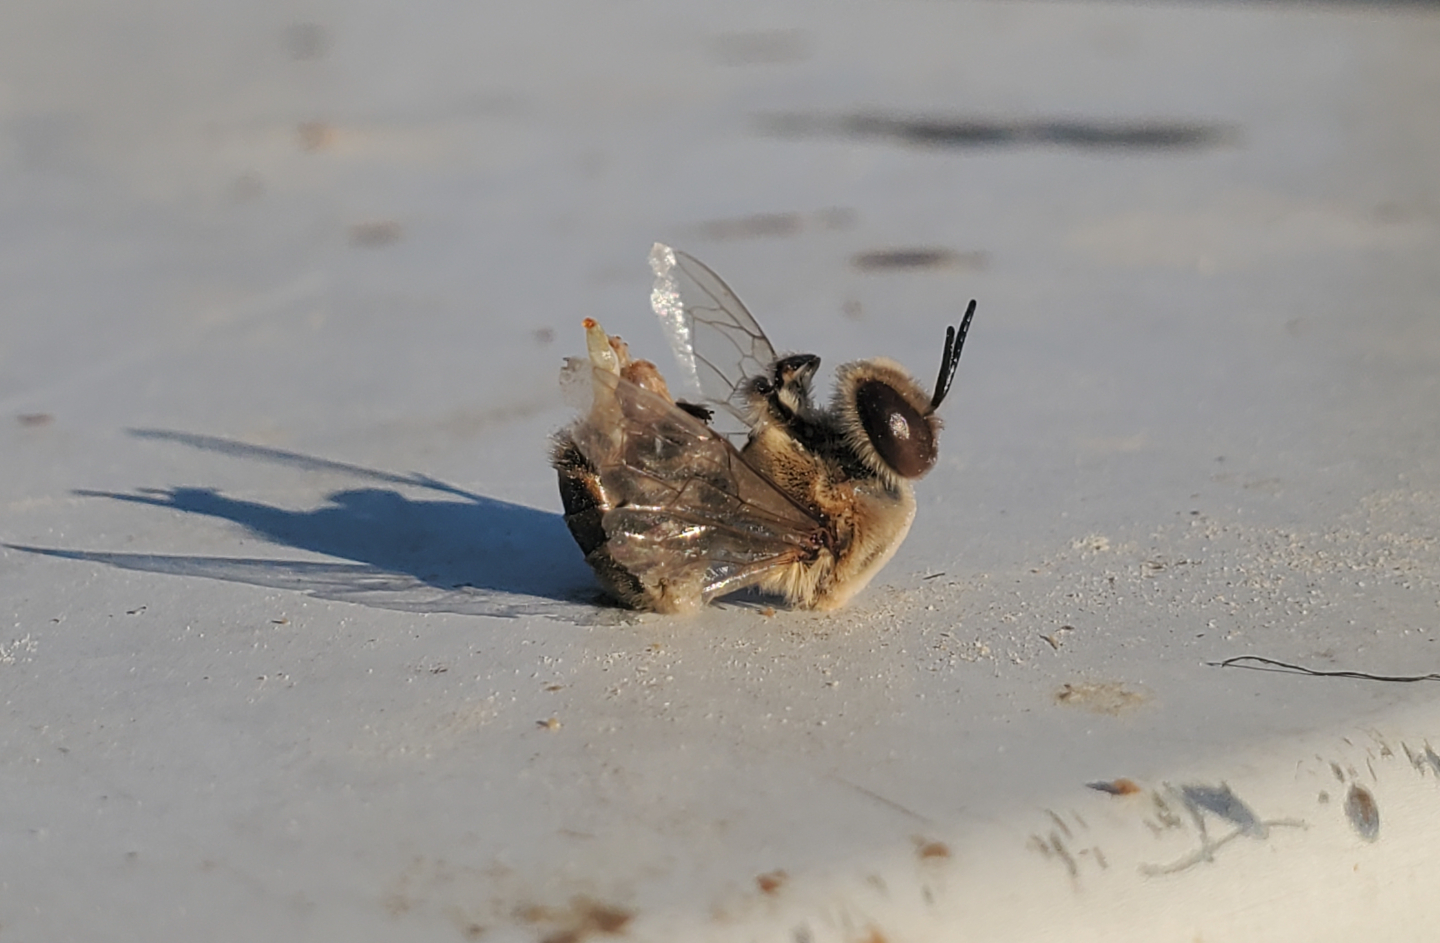 Dead honeybee drone on its back